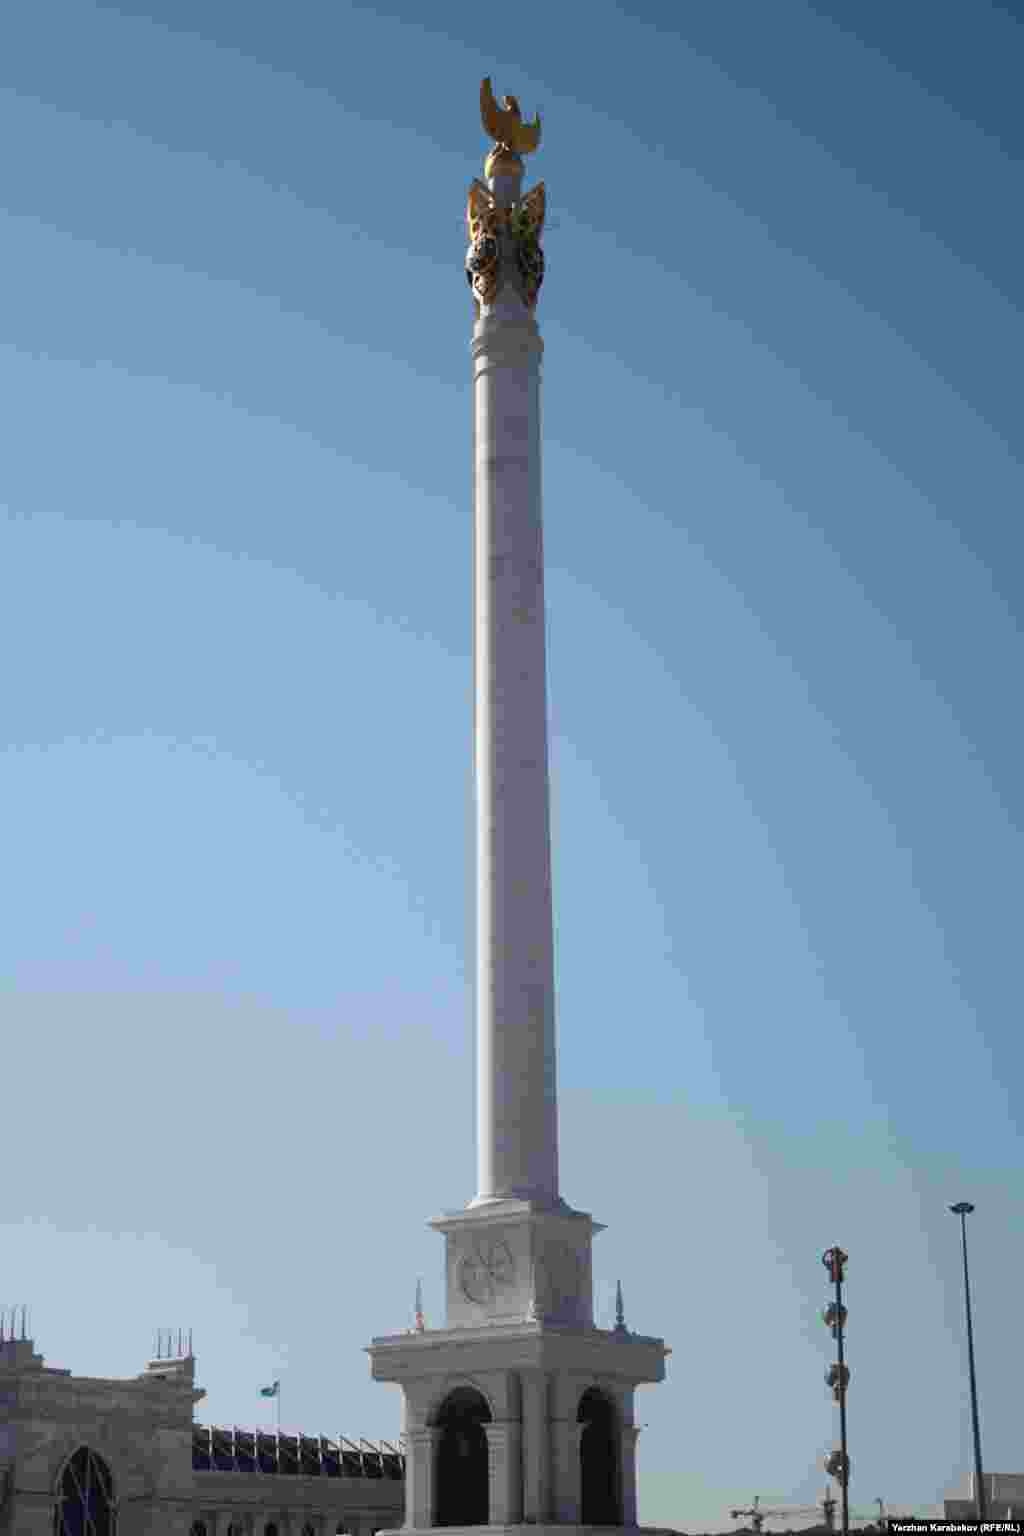 Астанадағы &quot;Қазақ елі&quot; монументі. Монумент биіктігі 91 метр. Бұл сан Қазақстан тәуелсіздігін жариялаған 1991 жылды білдіреді. &quot;Қазақ елі&quot; сәулет кешені 2009 жылы салынды. Астана, 4 маусым 2015 жыл.